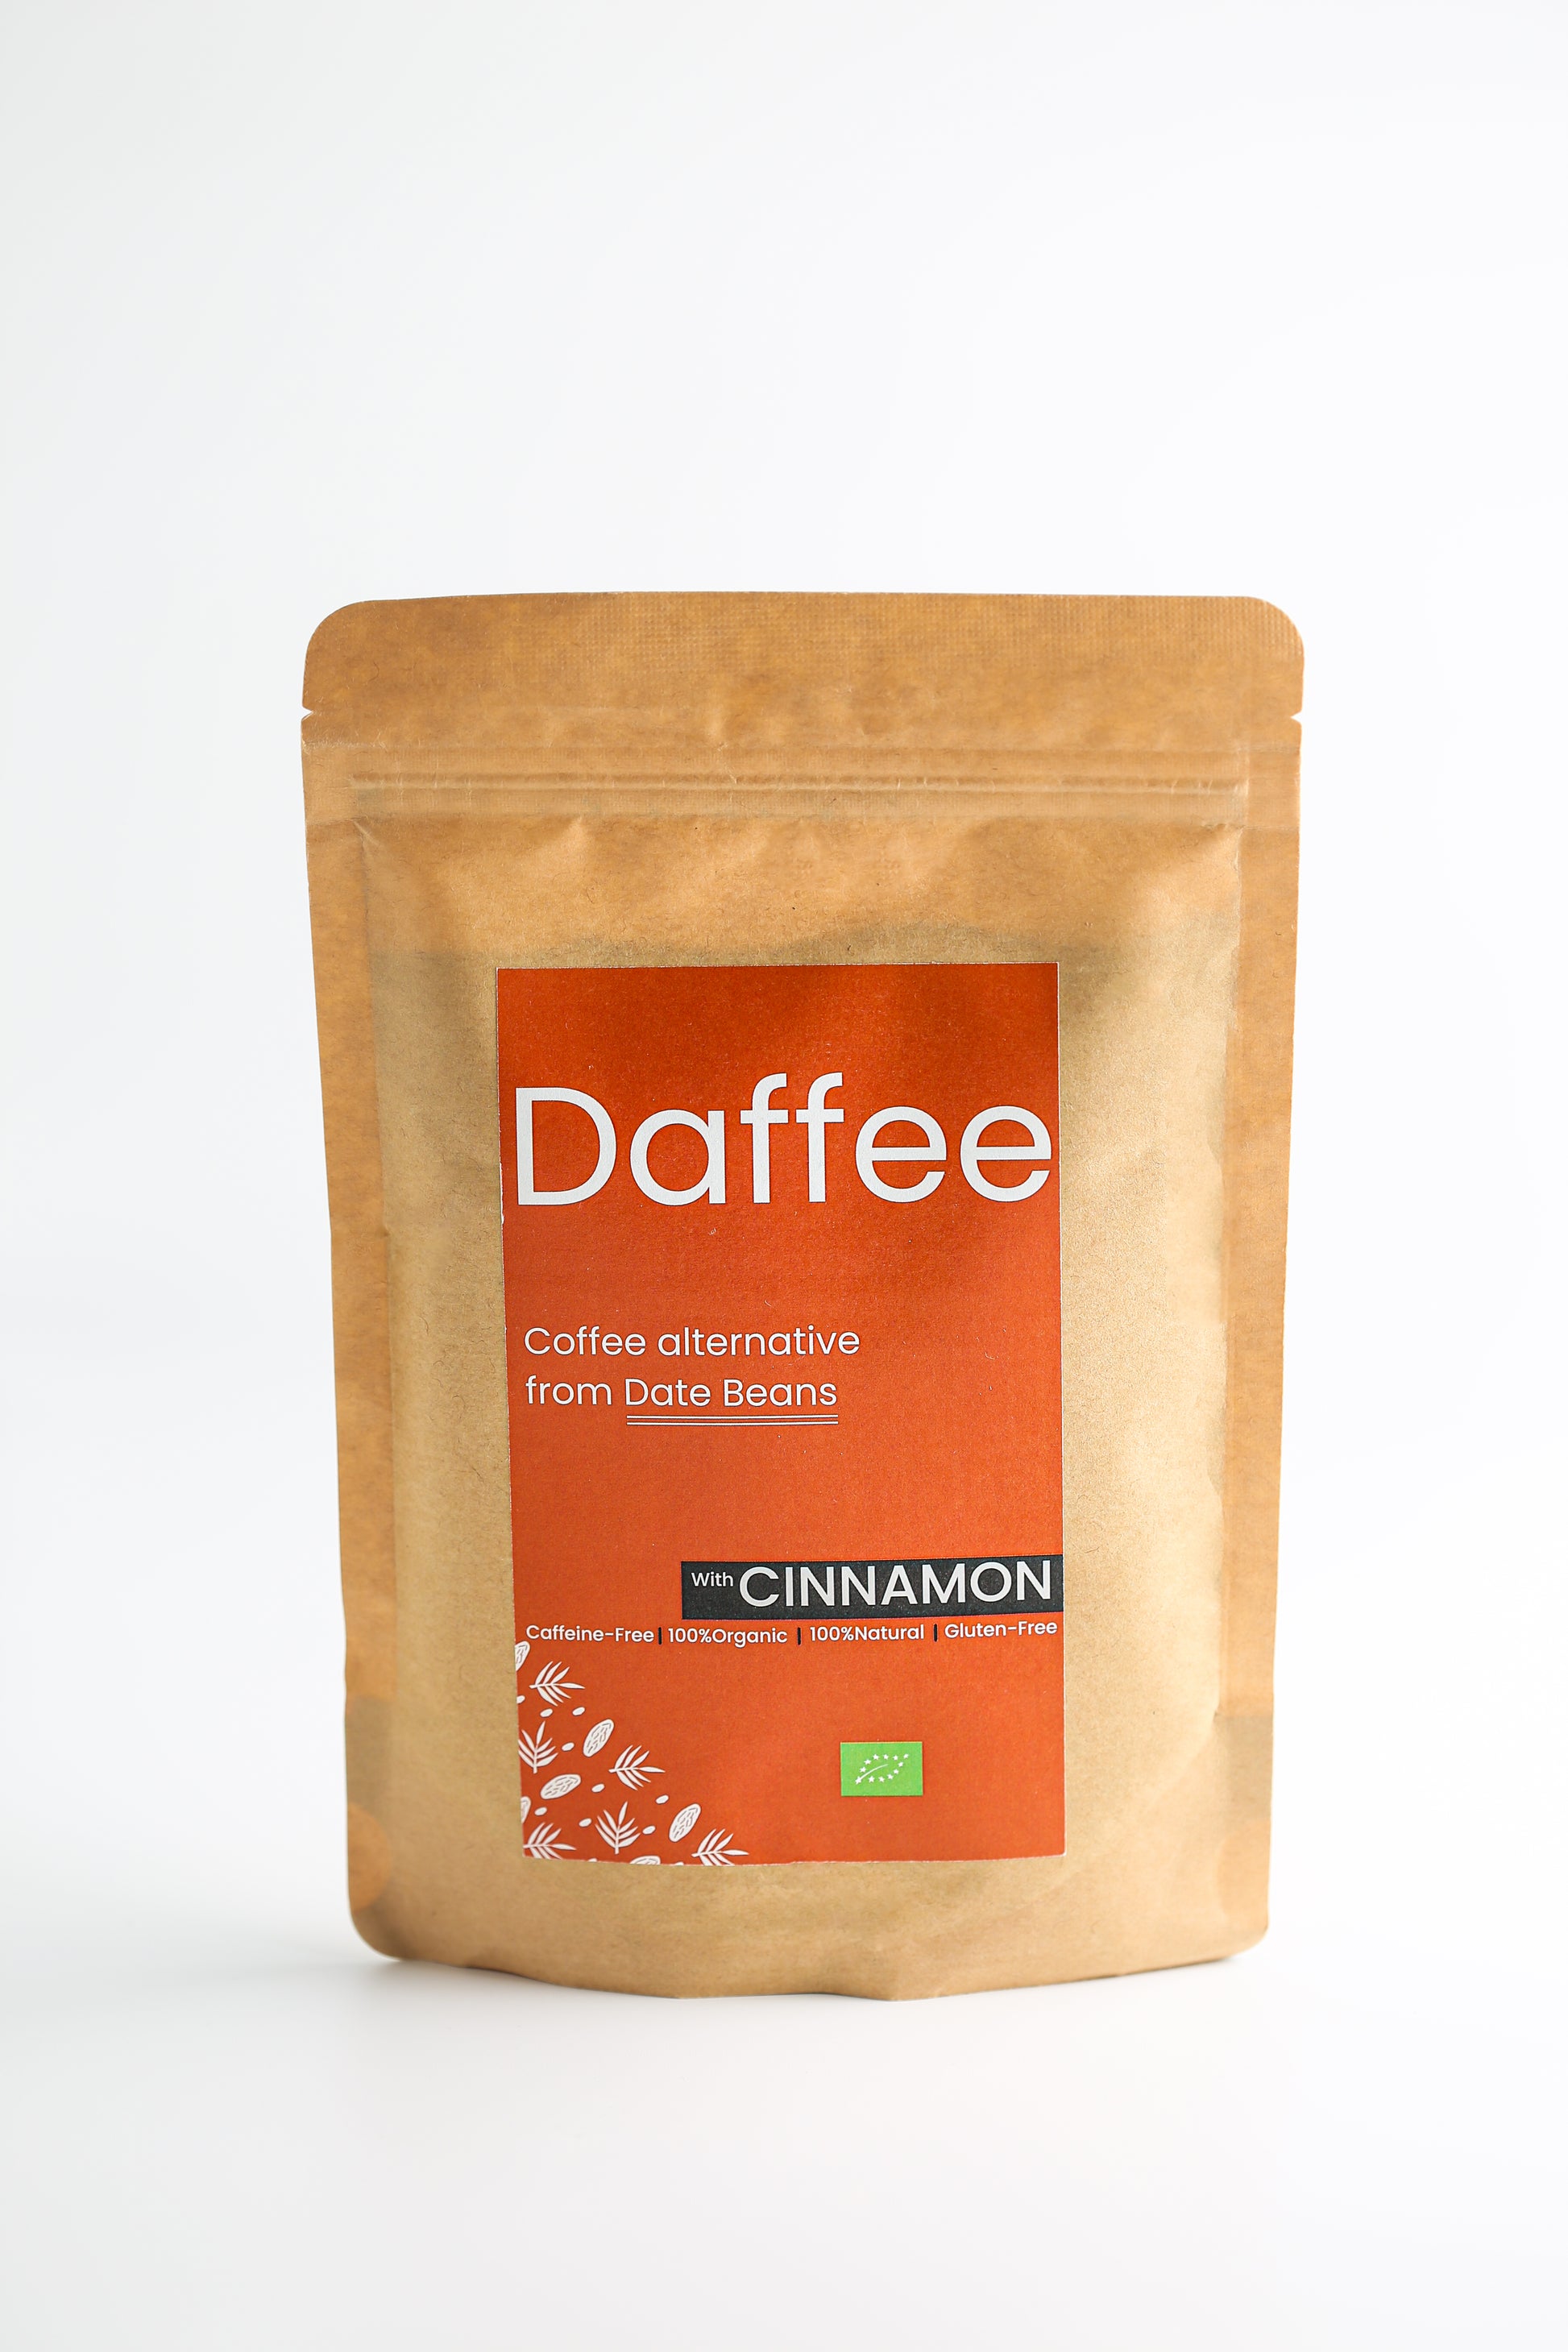 Daffee Kaneel koffiealternatief van dadelbonen in duurzame verpakking tegen een witte achtergrond.